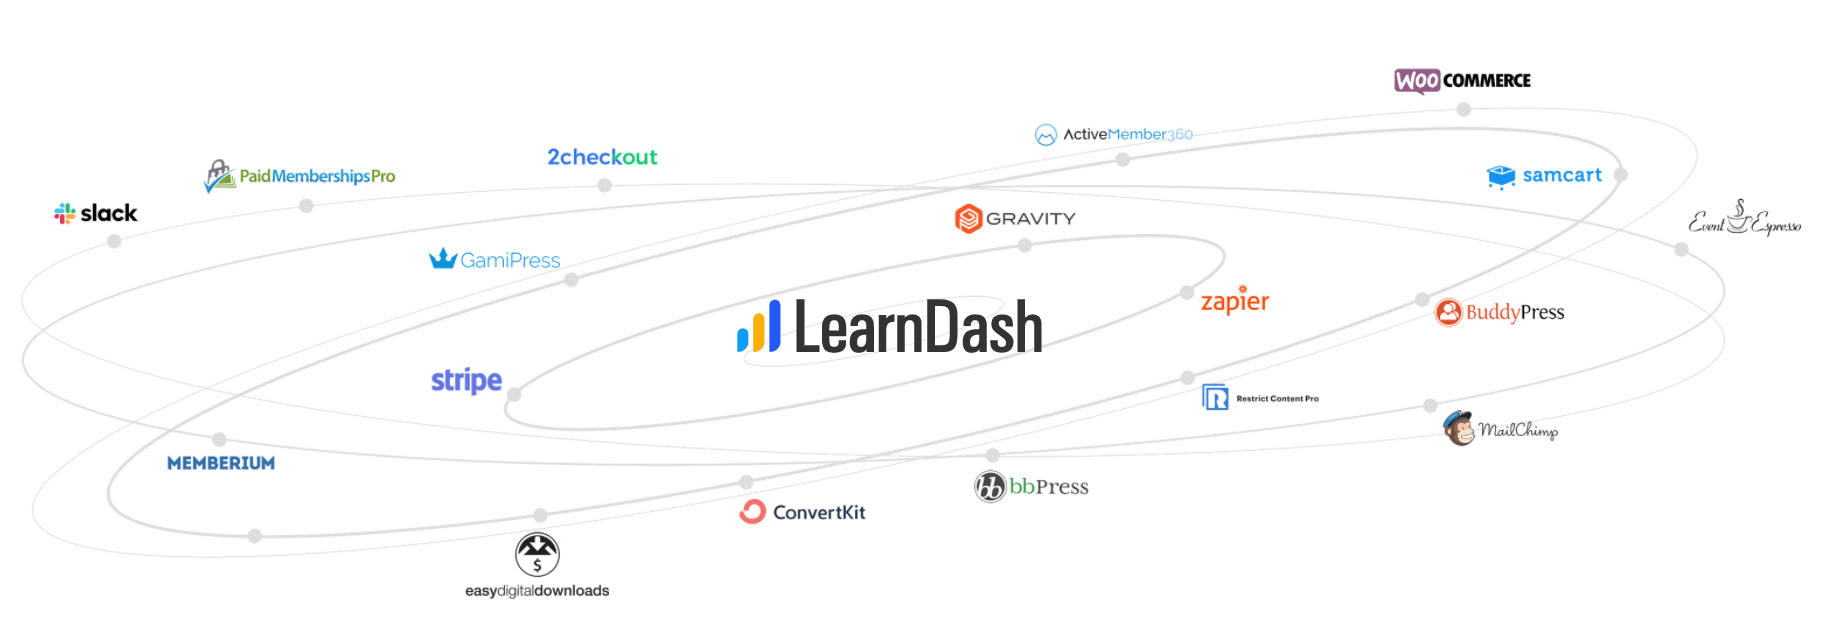 LearnDash Integrations - WP Courseware vs LearnDash